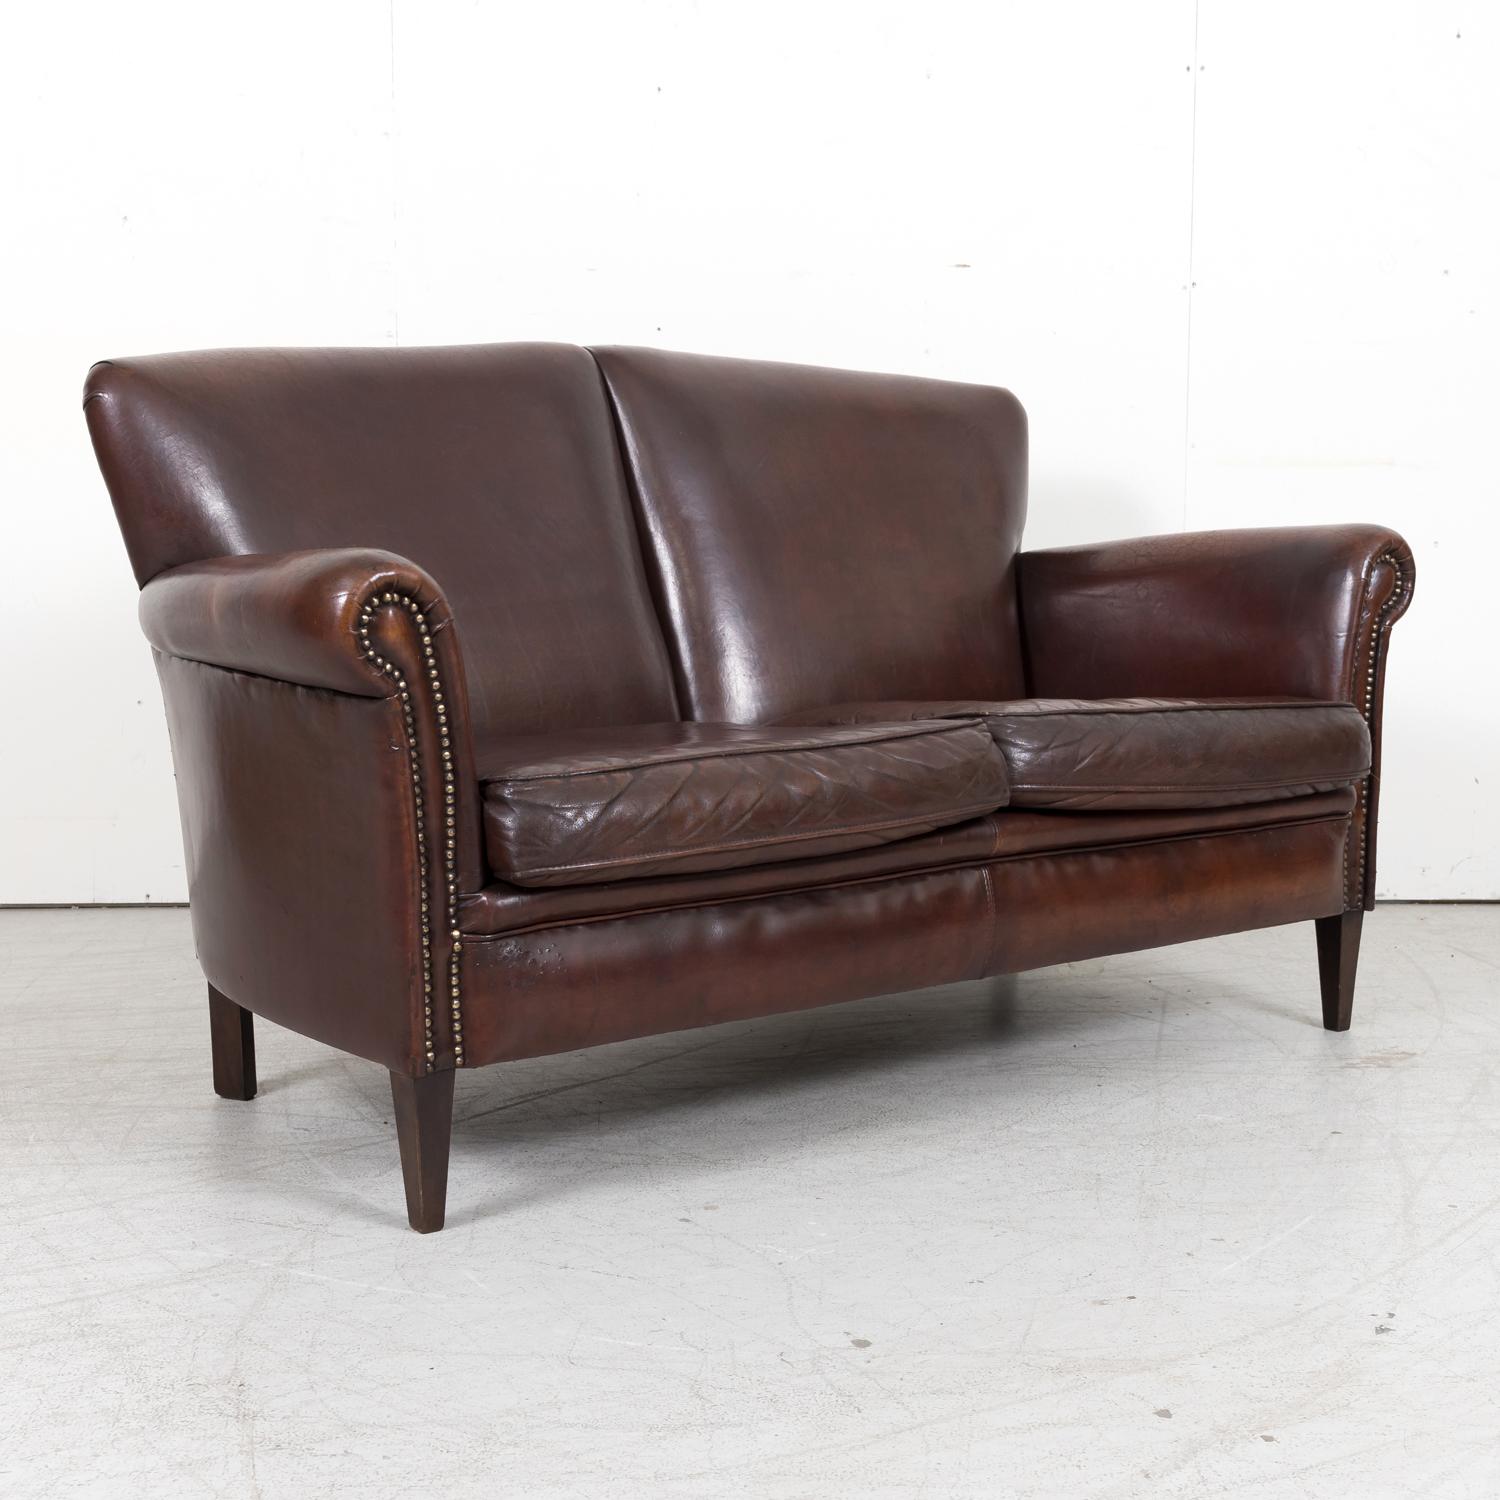 Magnifique canapé ou sofa à deux places Art déco français du XXe siècle en cuir brun foncé d'origine, vers les années 1930, avec un dossier serré, des accoudoirs à volutes avec garniture en tête de clou, et deux coussins d'assise détachés. Elle